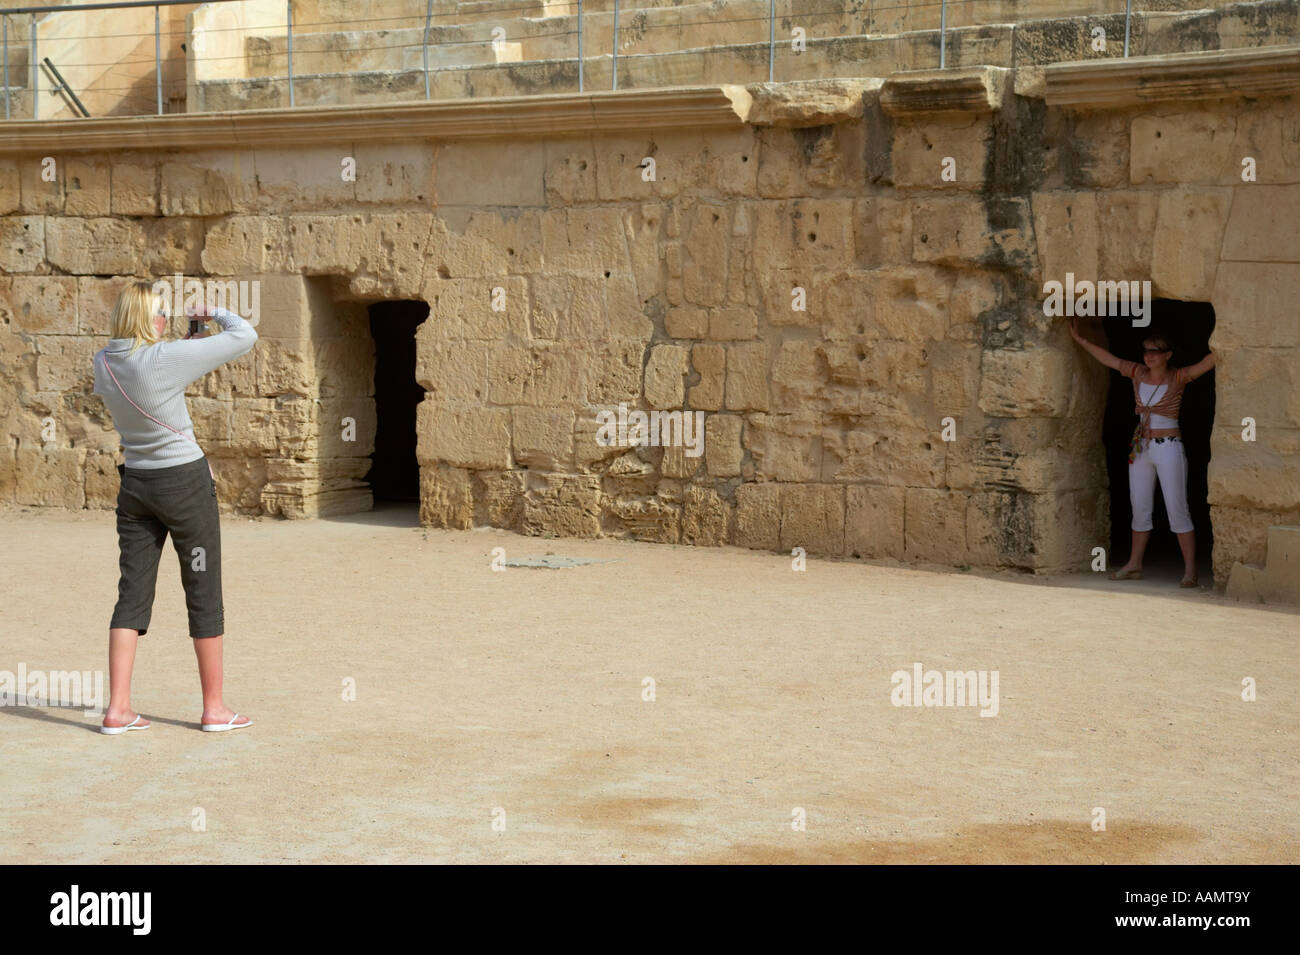 zwei weibliche Touristen fotografieren auf dem Boden der Arena der Hauptarena des alten römischen Kolosseum in el Jem Tunesien Stockfoto